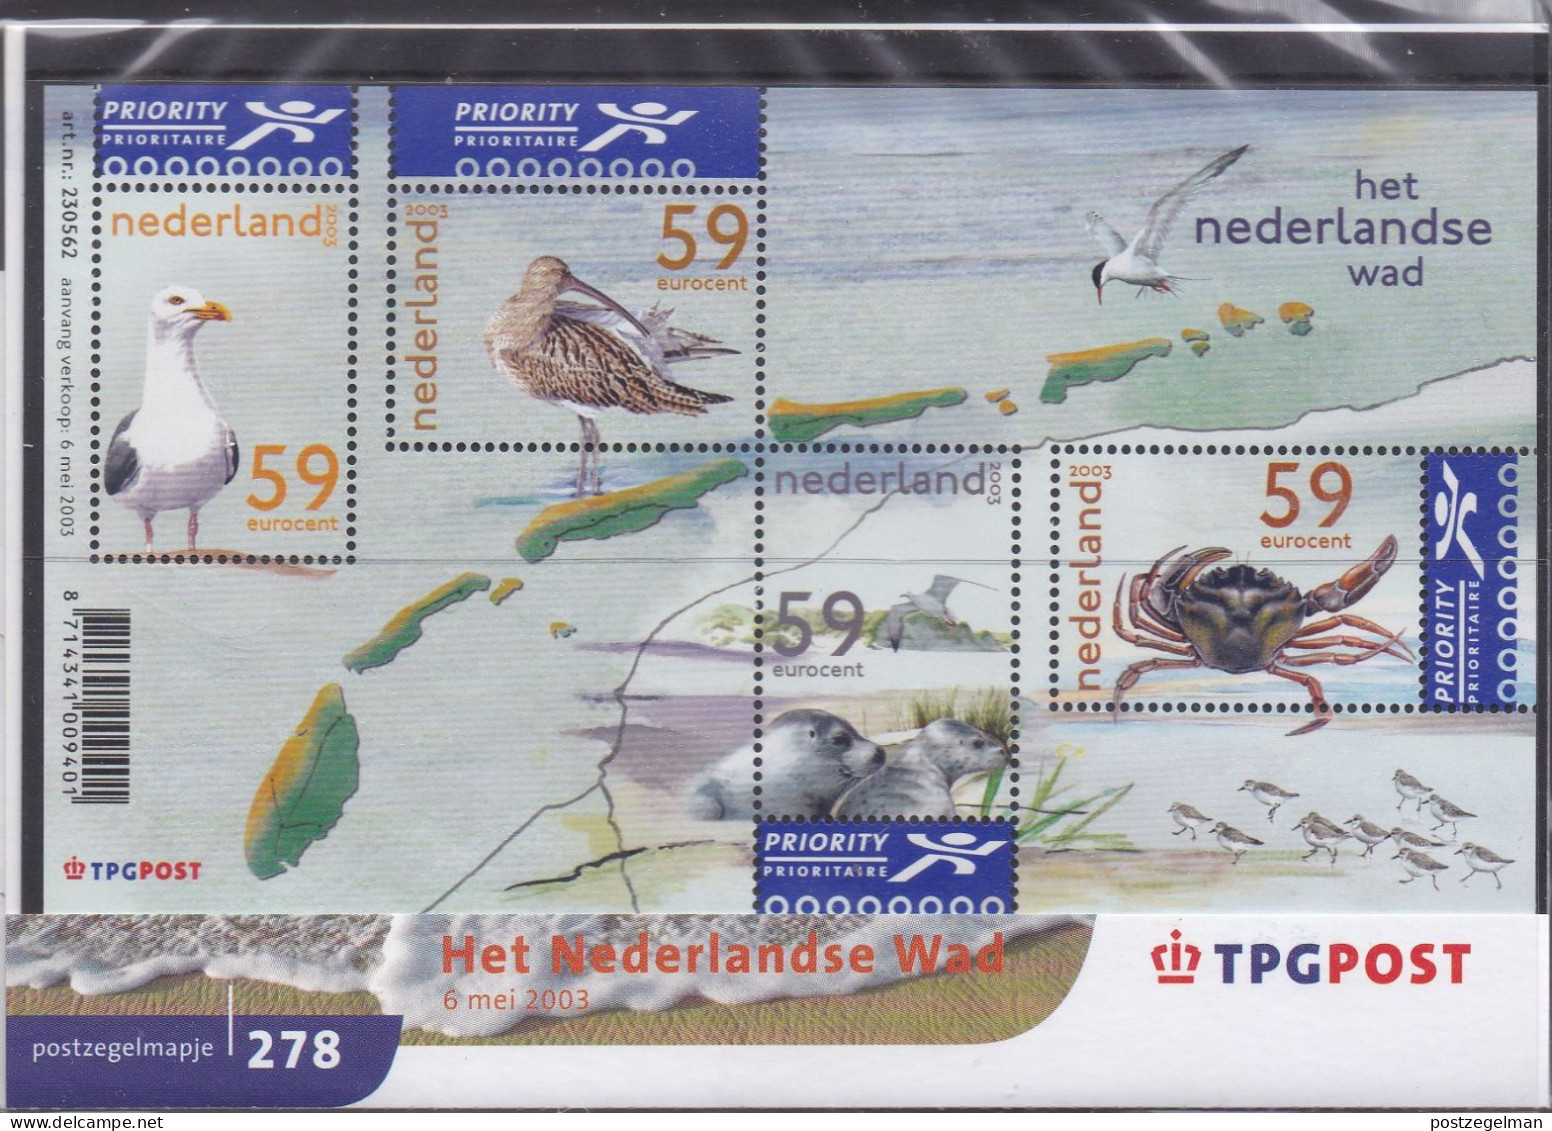 NEDERLAND, 2003, MNH Zegels In Mapje, Nederlandse Wad , NVPH Nrs. 2171, Scannr. M278 - Unused Stamps